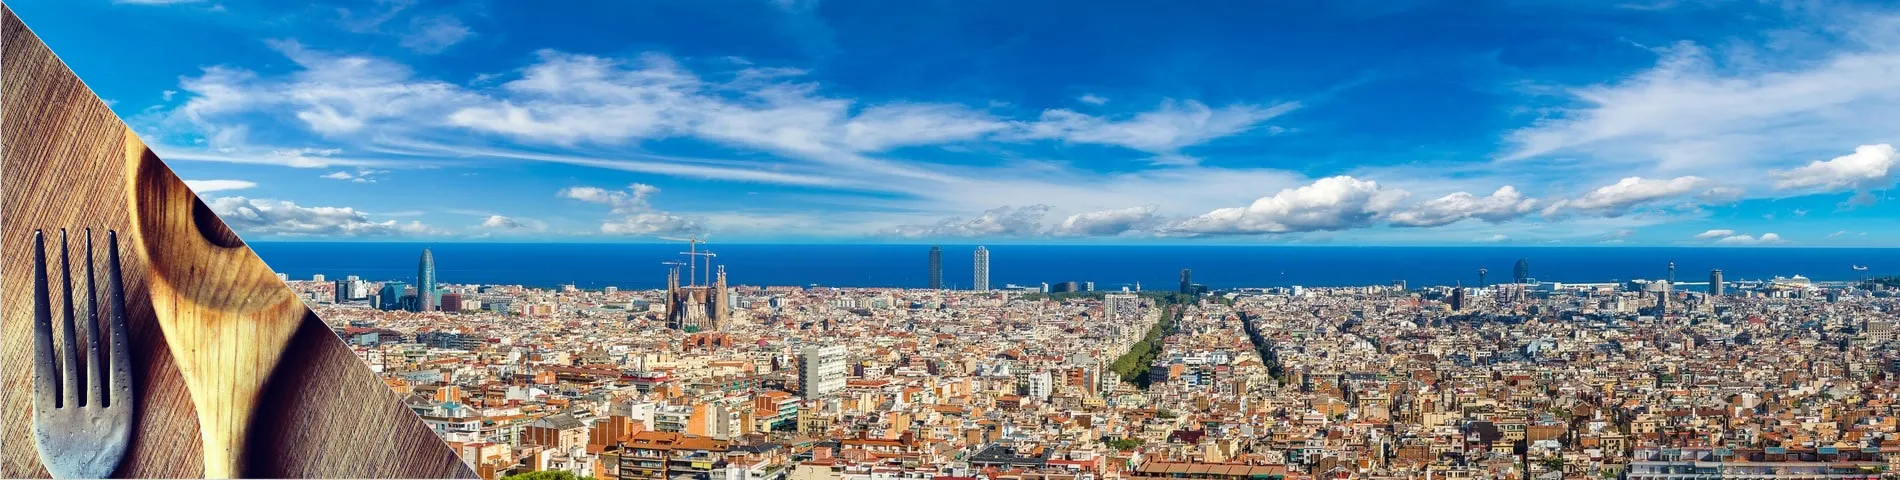 Barcelona - Španielčina a varenie